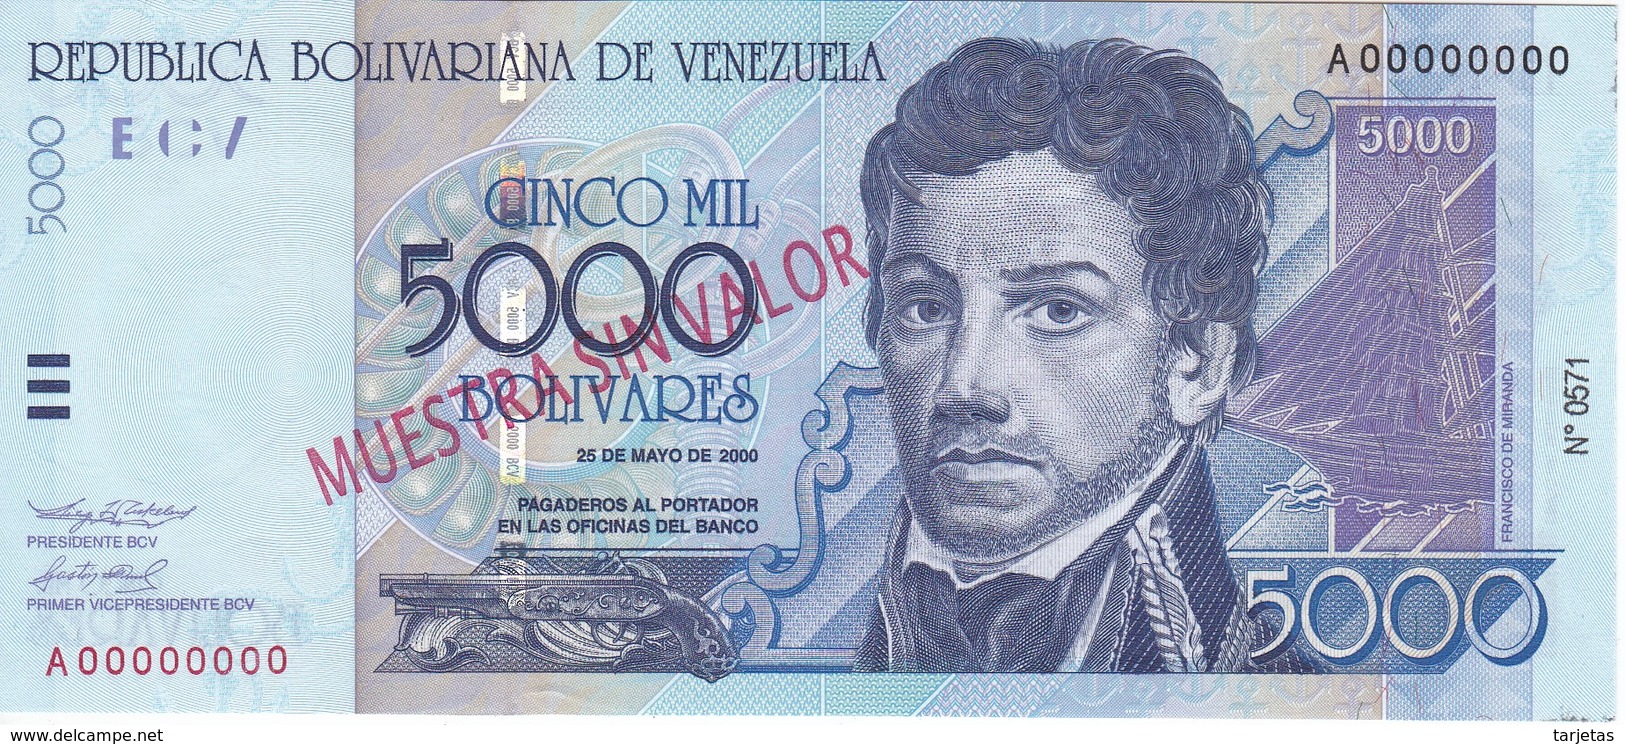 ESPECIMEN - BILLETE DE VENEZUELA DE 5O00 BOLIVARES DEL AÑO 2000 SIN CIRCULAR-UNCIRCULATED (SPECIMEN) (BANKNOTE) MUY RARO - Venezuela